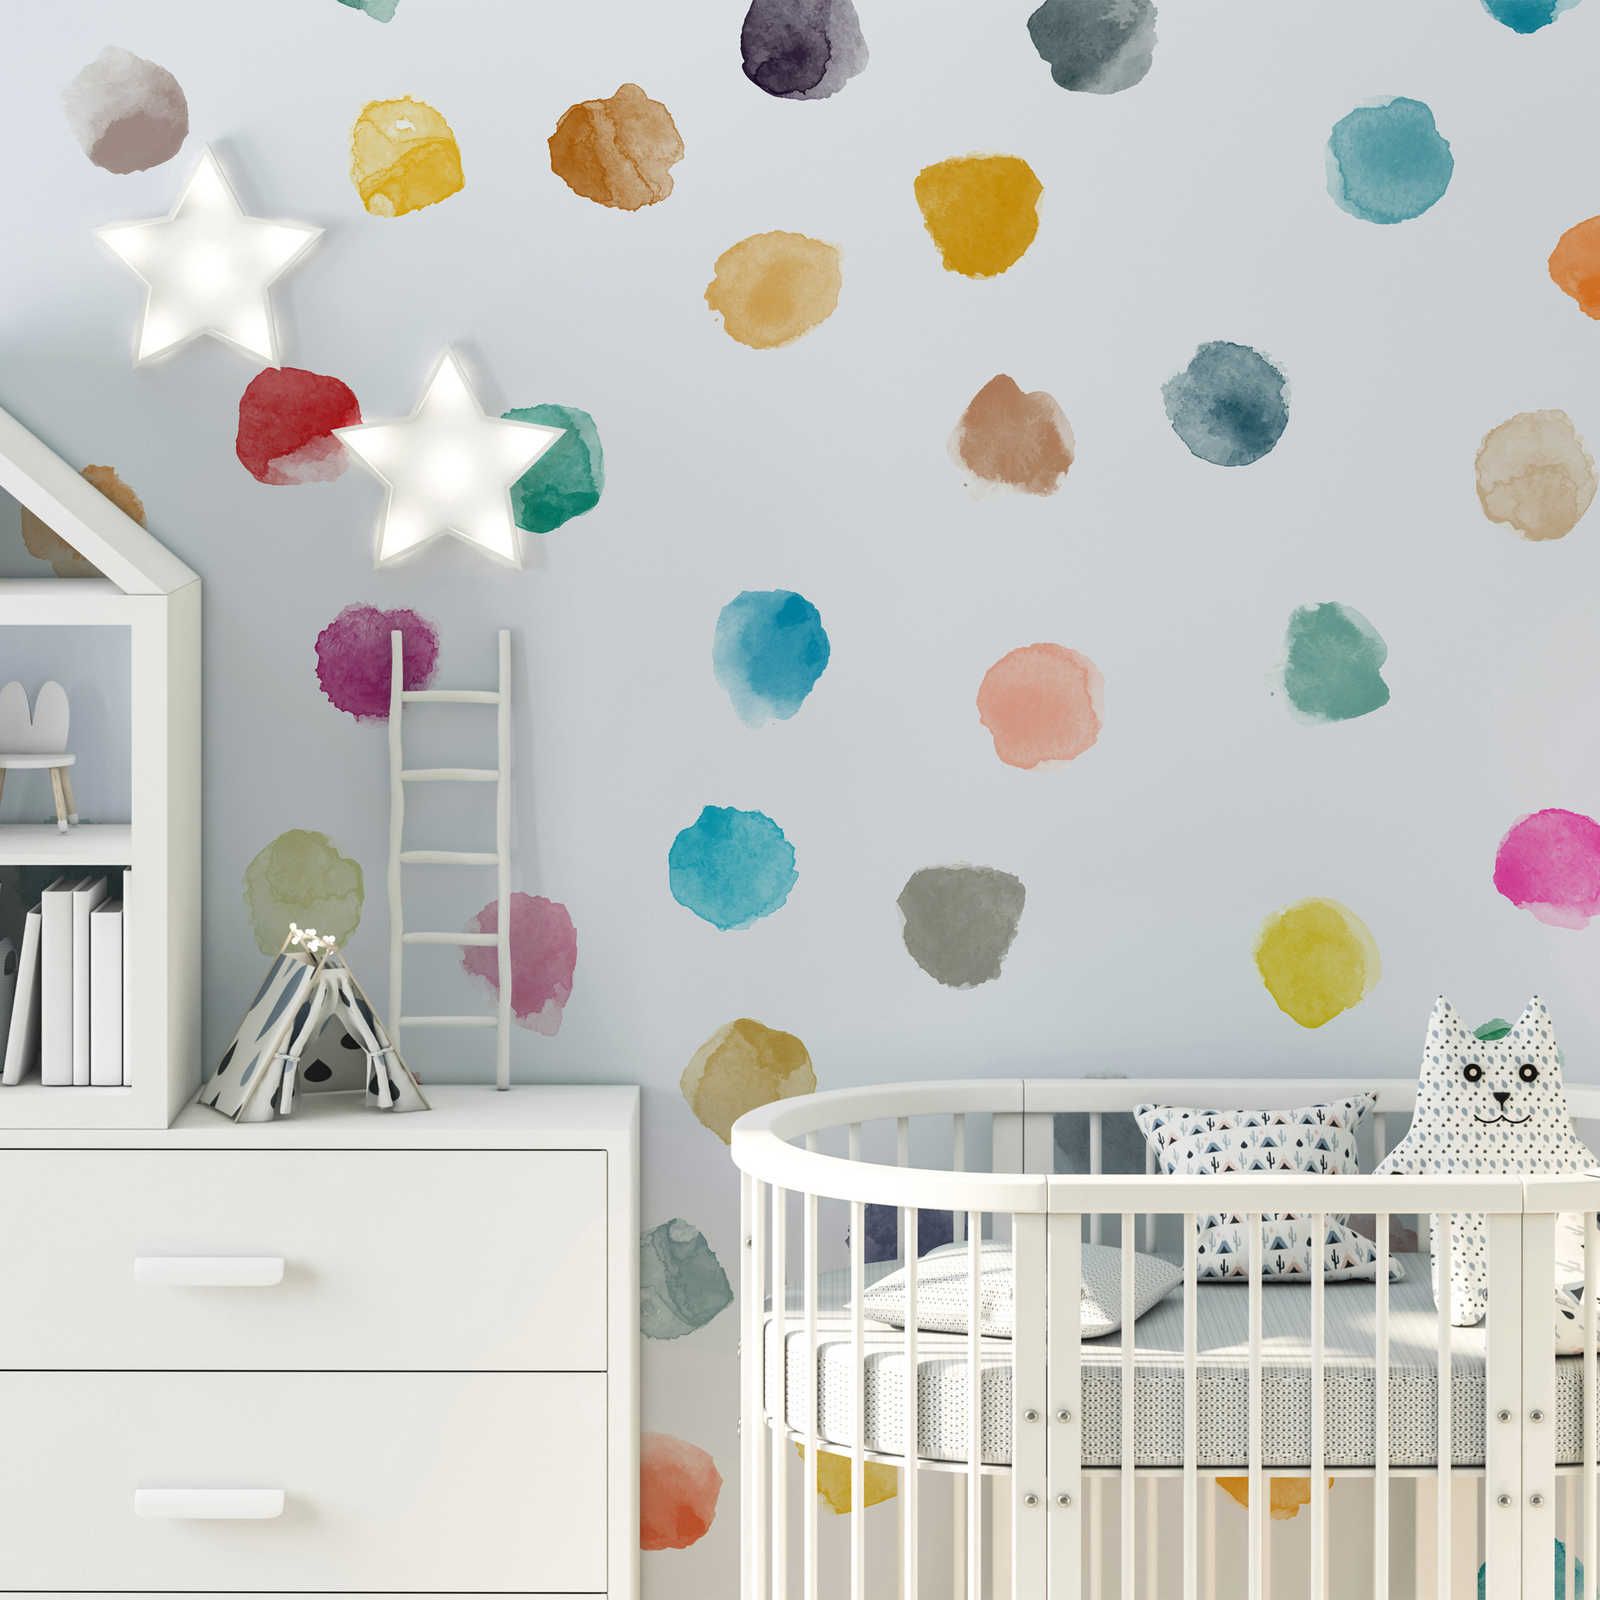         Fototapete fürs Kinderzimmer mit bunten Punkten – Glattes & leicht glänzendes Vlies
    